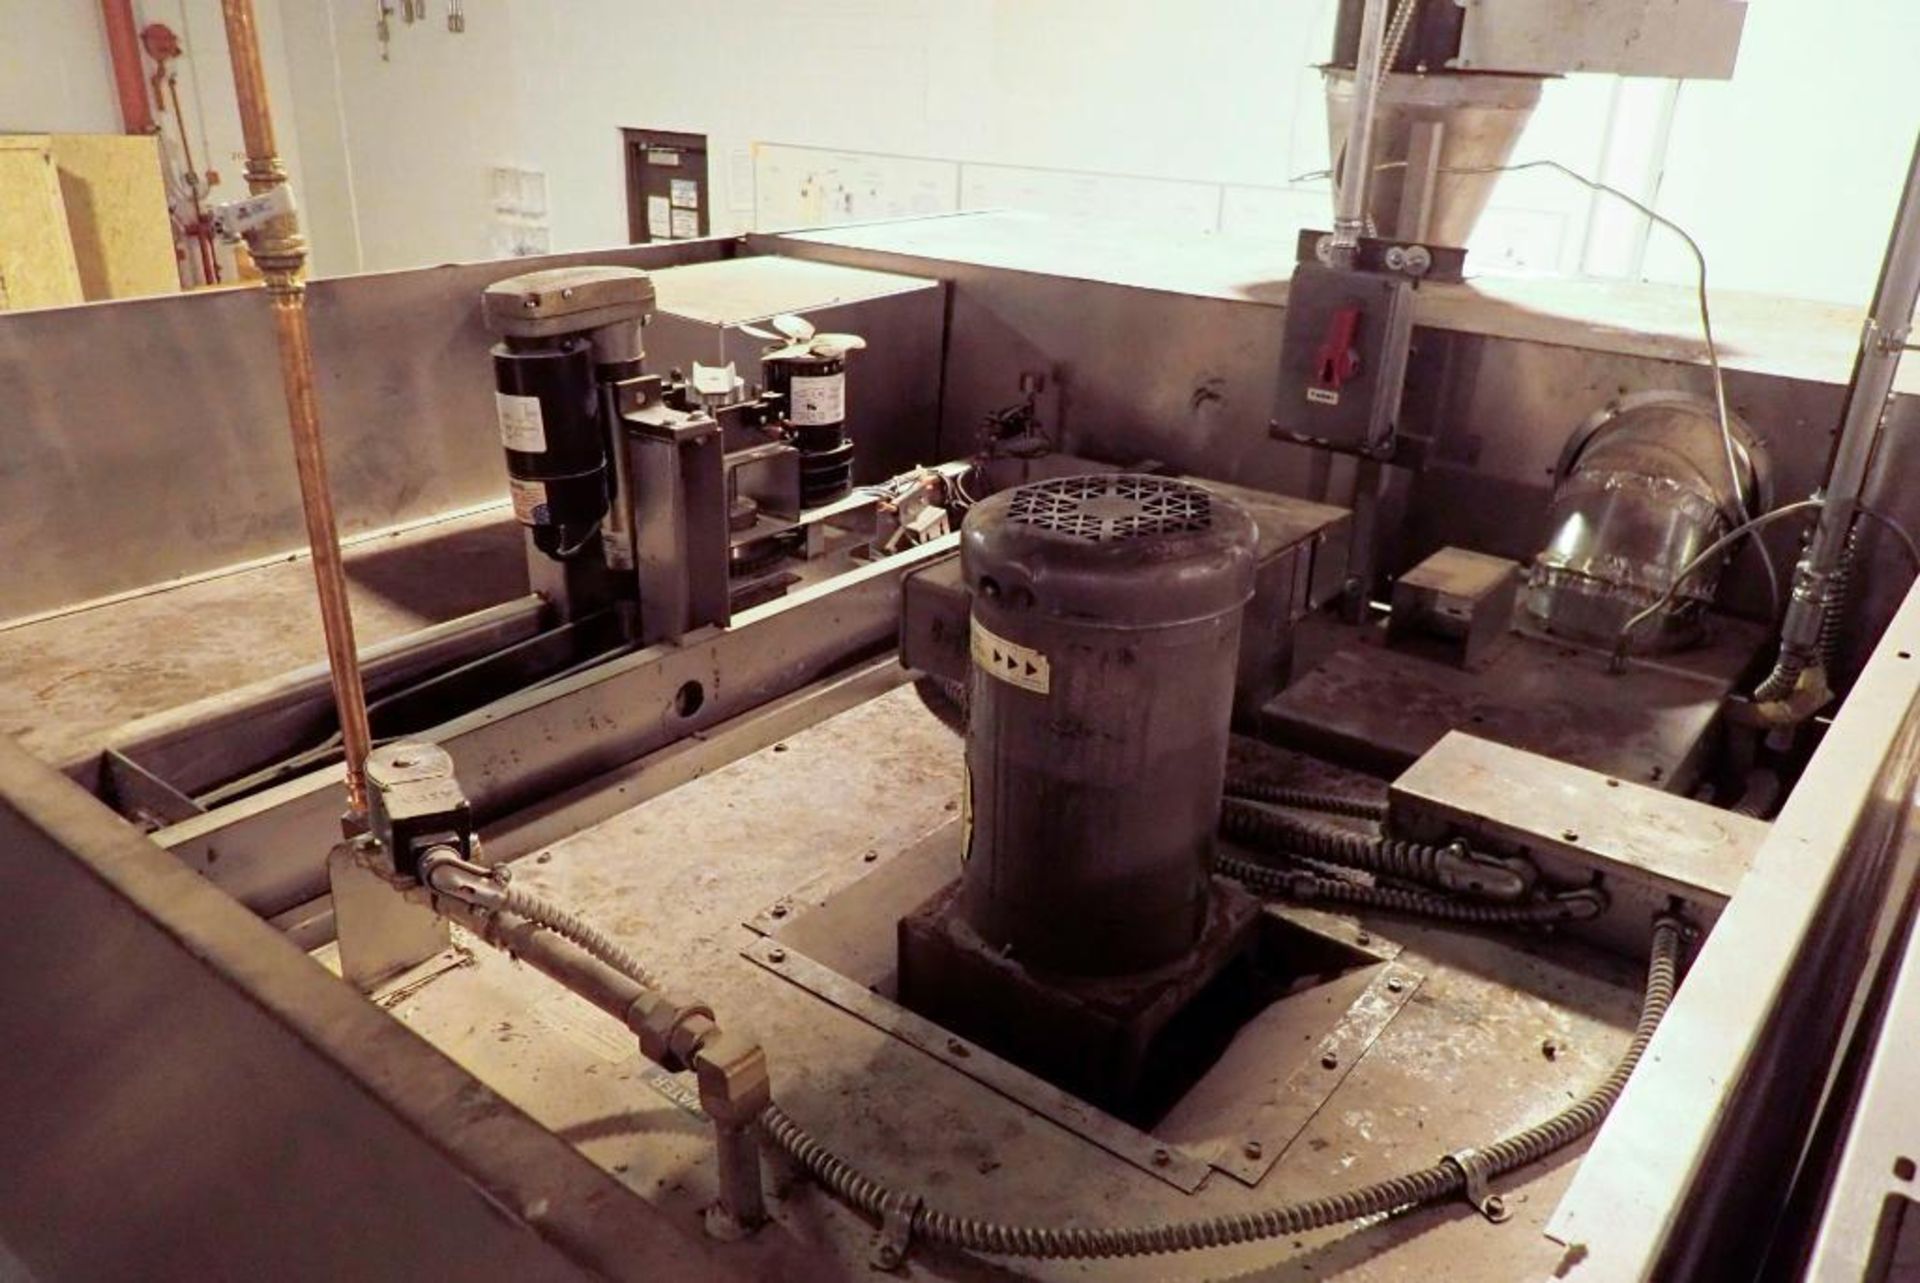 Hobart double rack oven - Image 13 of 16